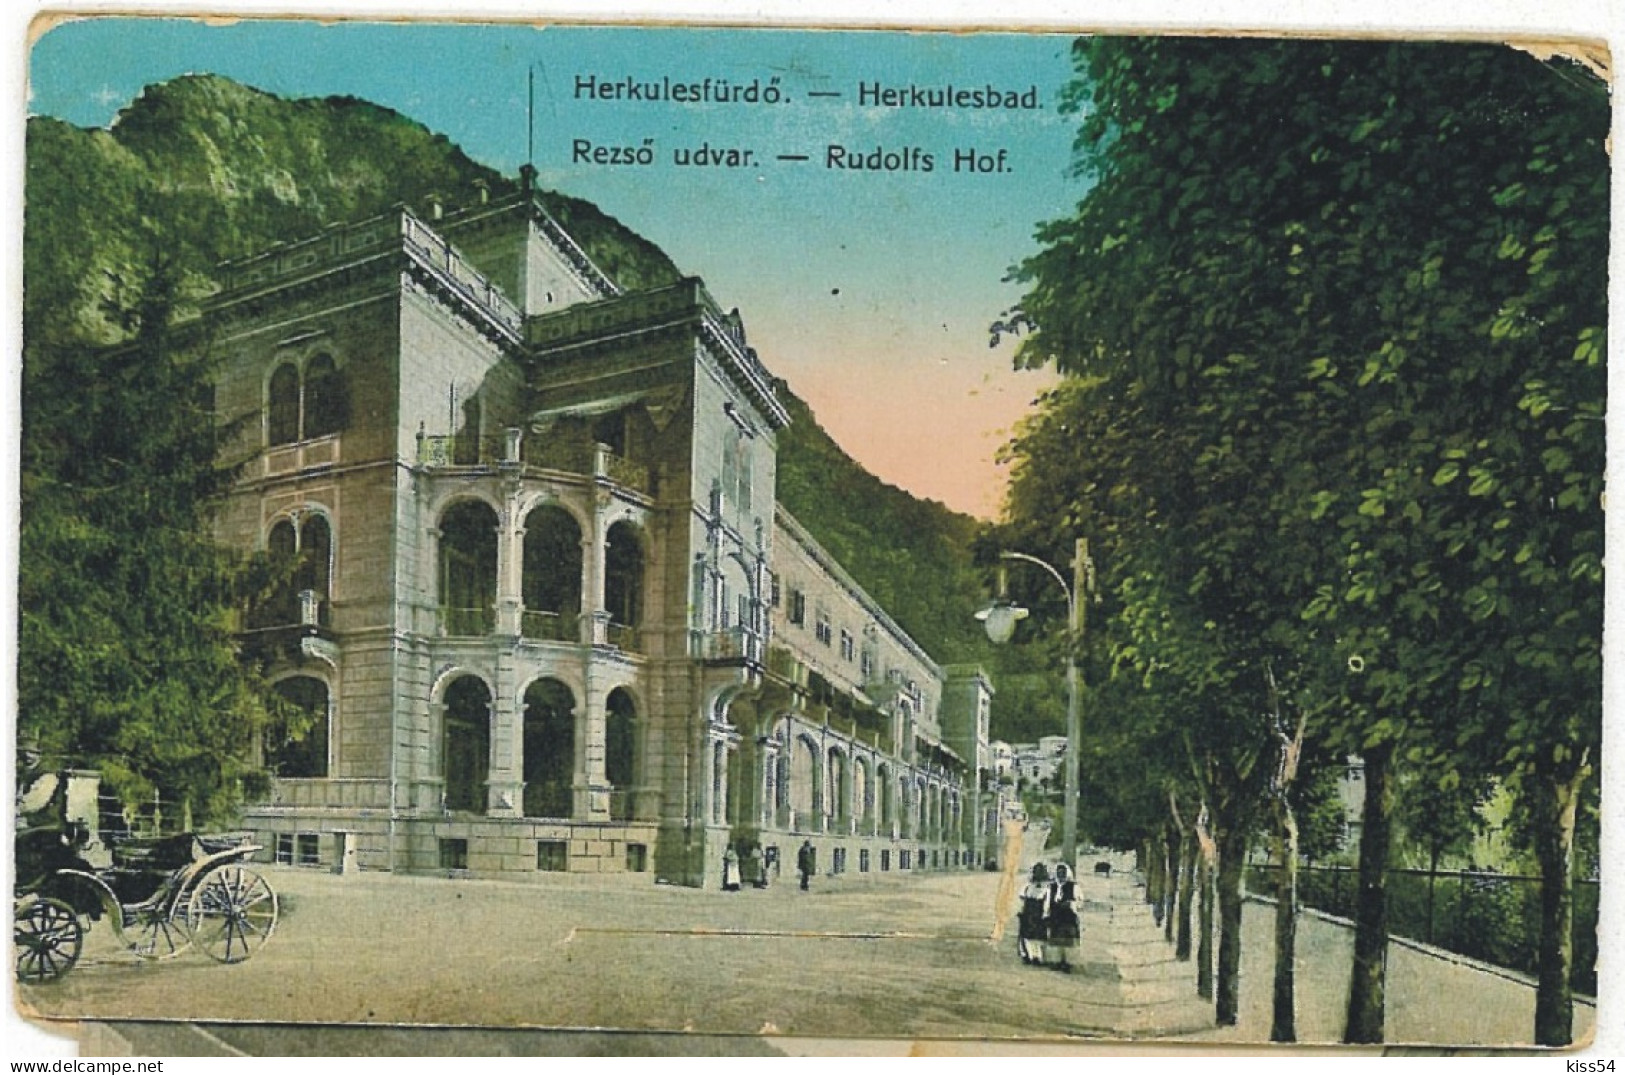 RO 52 - 6084 Baile HERCULANE, Caras-Severin, Romania - Old Postcard +10 Mini Photocards - Used - 1910 - Romania